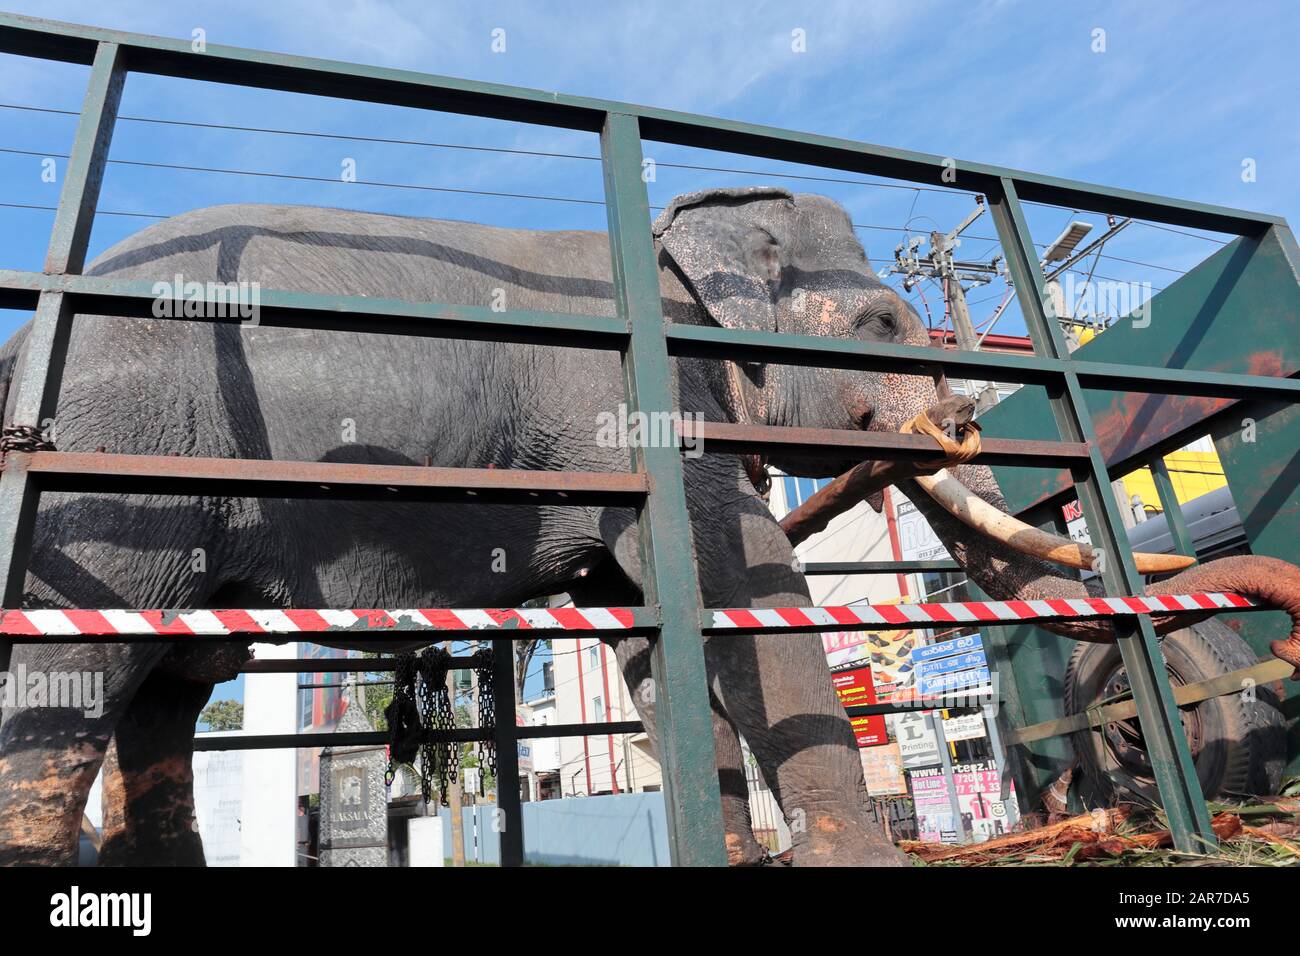 Ein indischer Elefant, der in einem offenen Lastwagen durch Colombo, Sri Lanka transportiert wird. Möglicherweise zu einem lokalen fest oder einer Veranstaltung. Stockfoto